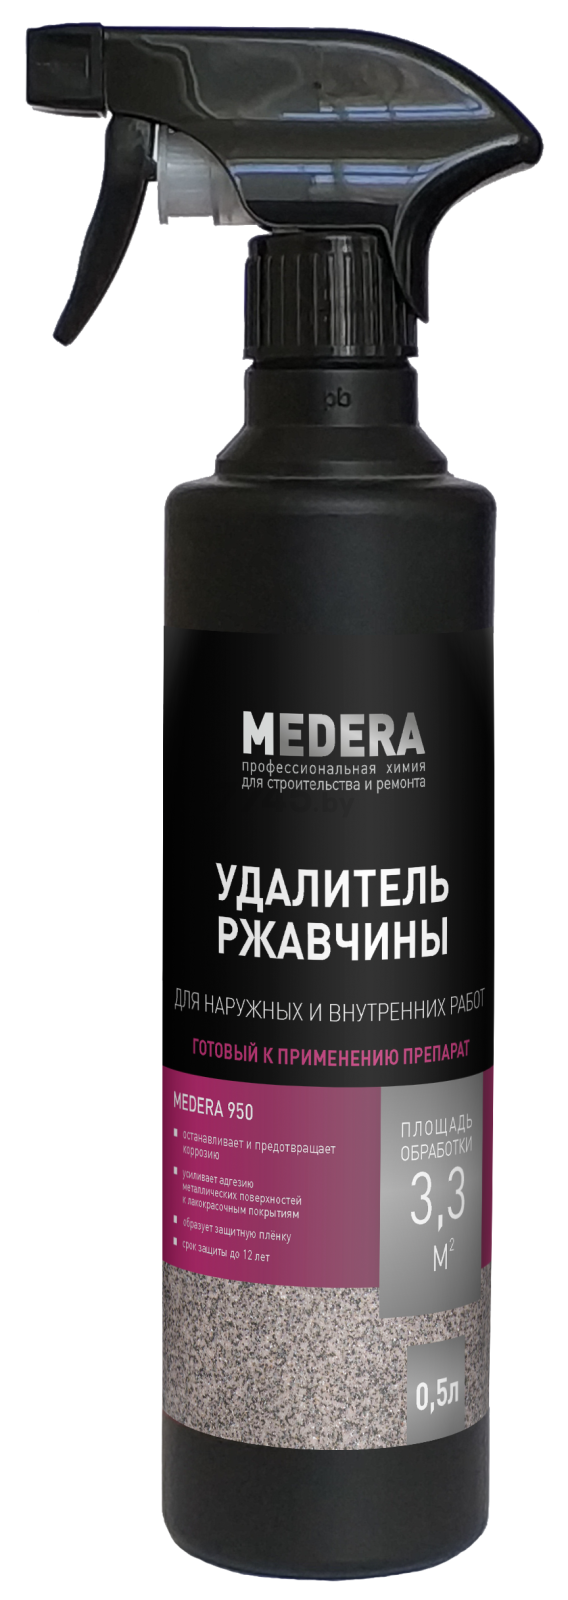 Удалитель ржавчины MEDERA 950 0,5 л (2029-05)